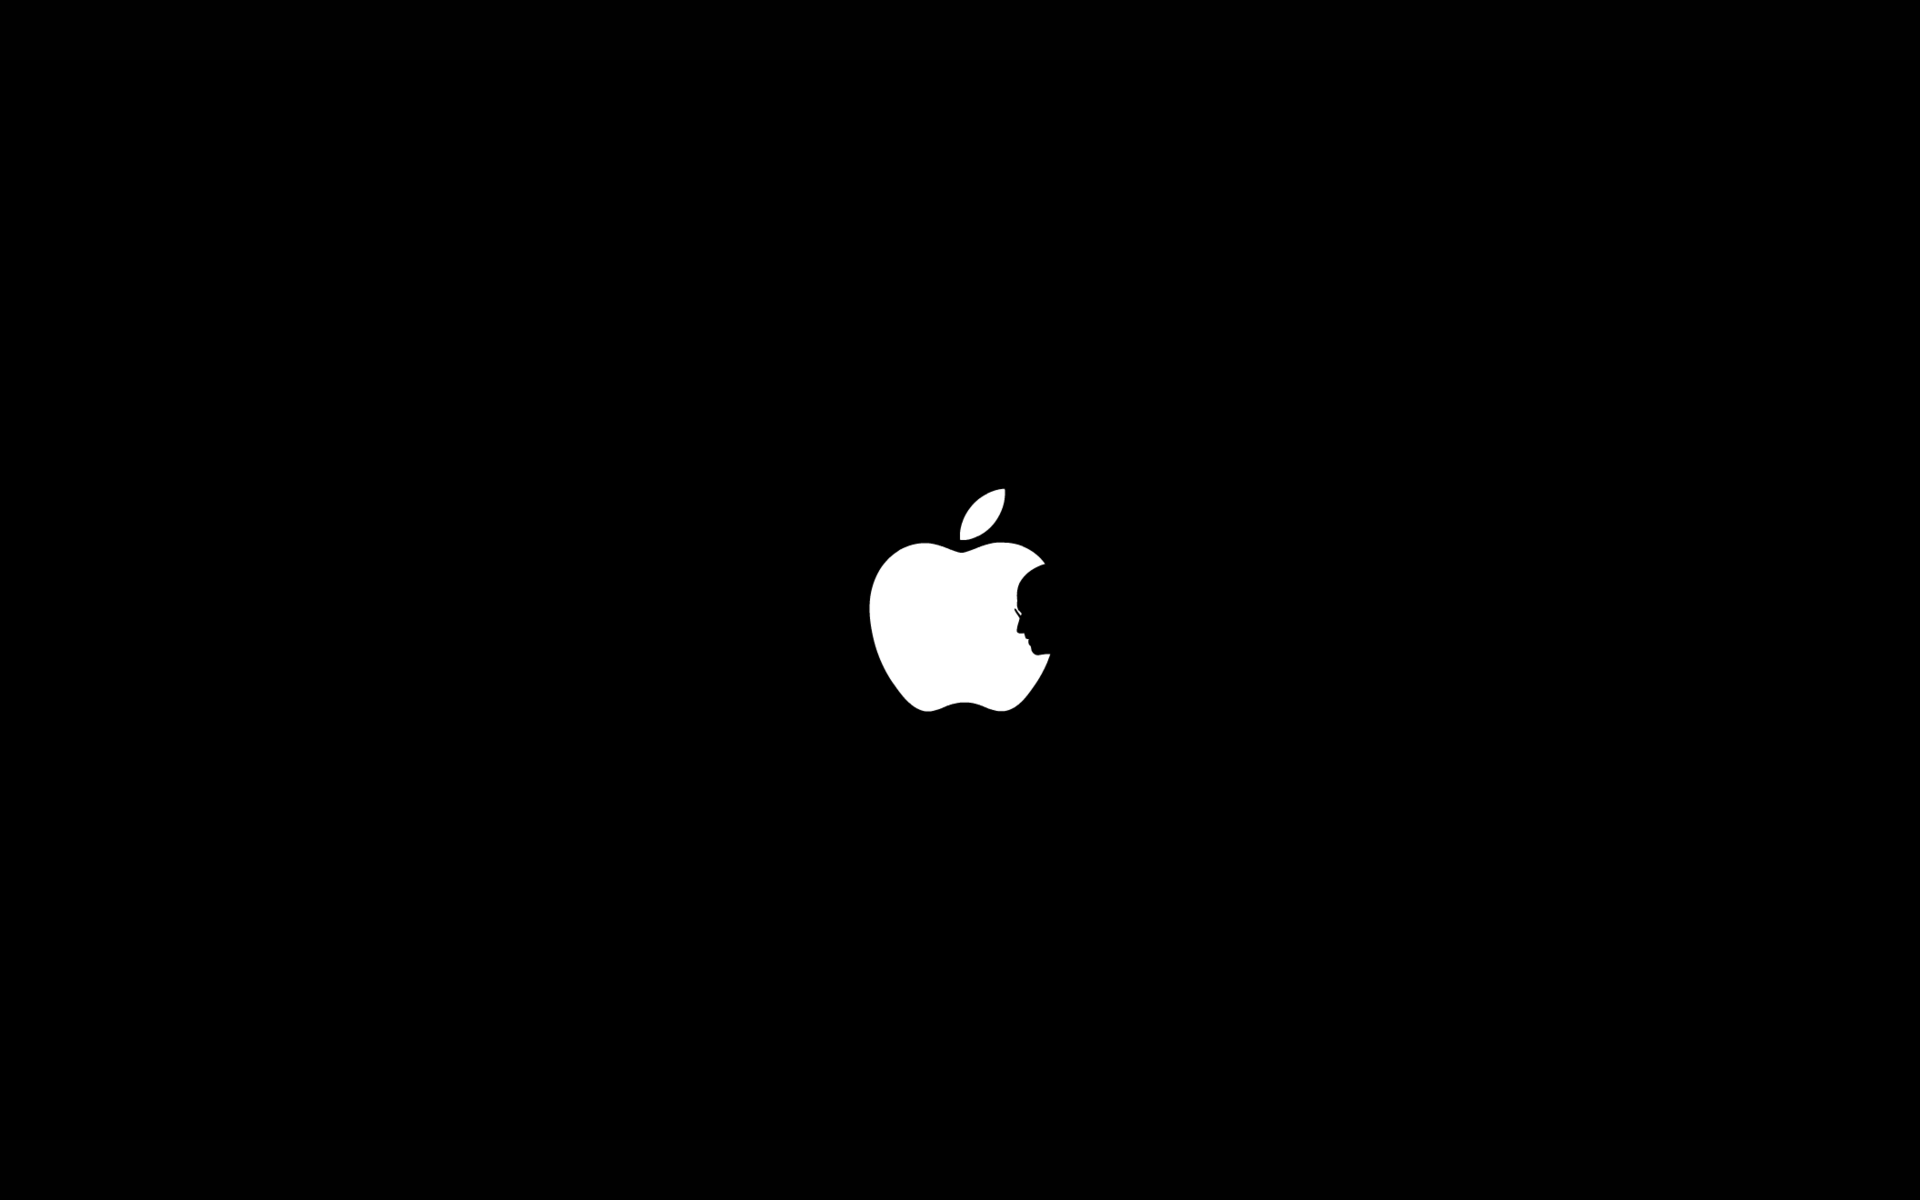 Hình nền táo đen: Hình nền táo đen là sự kết hợp tuyệt vời giữa sự đơn giản và sang trọng. Với hình ảnh táo đen tươi sáng, bạn sẽ cảm thấy bình yên và quyến rũ khi làm việc trên máy tính. Hãy cùng chiêm ngưỡng hình nền táo đen và trải nghiệm cảm giác thư giãn tuyệt vời.